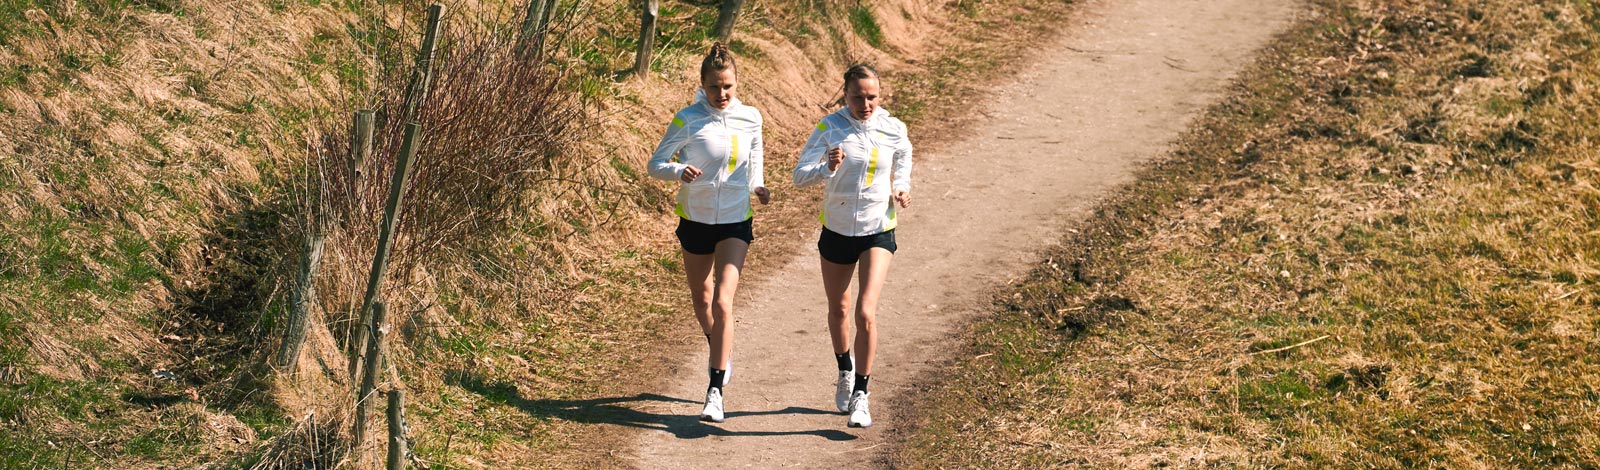 Zwei Läuferinnen in hellen Laufjacken laufen auf einem schmalen Weg zwischen spärlich bewachsenen Wiesen in der Natur